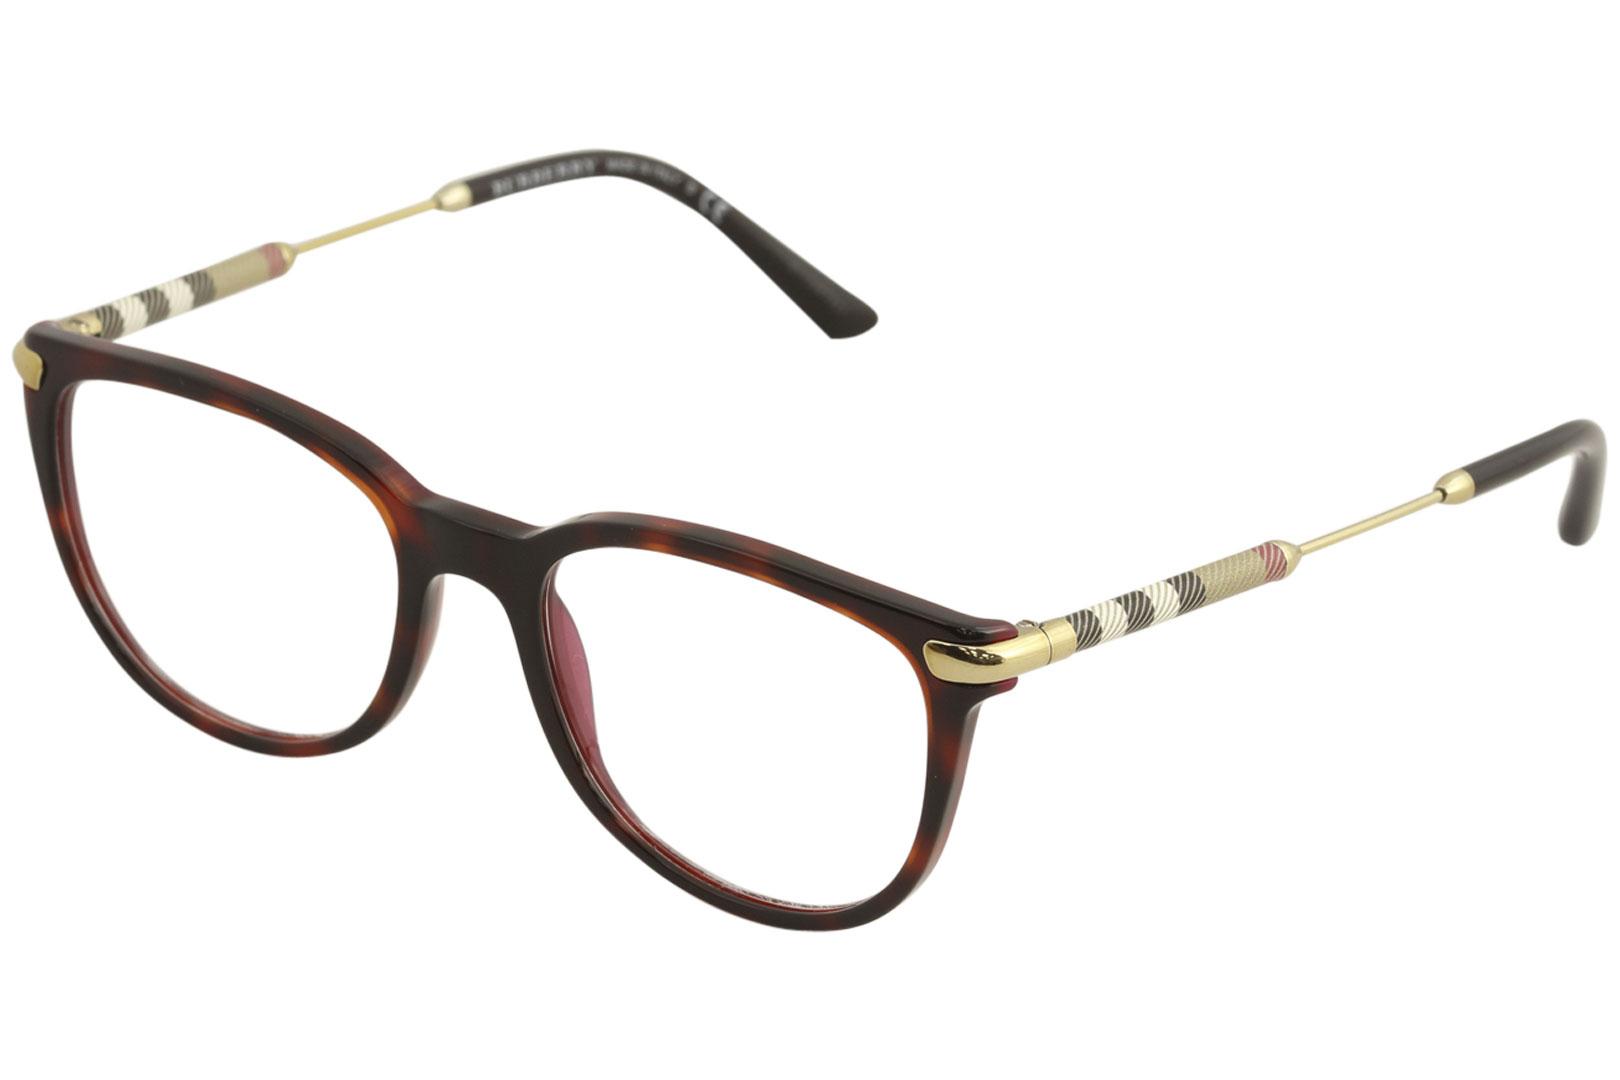 Burberry Women's Eyeglasses B2255Q B/2255/Q Full Rim Optical Frame - Havana/Bordeaux   3657 - Lens 53 Bridge 18 Temple 140mm